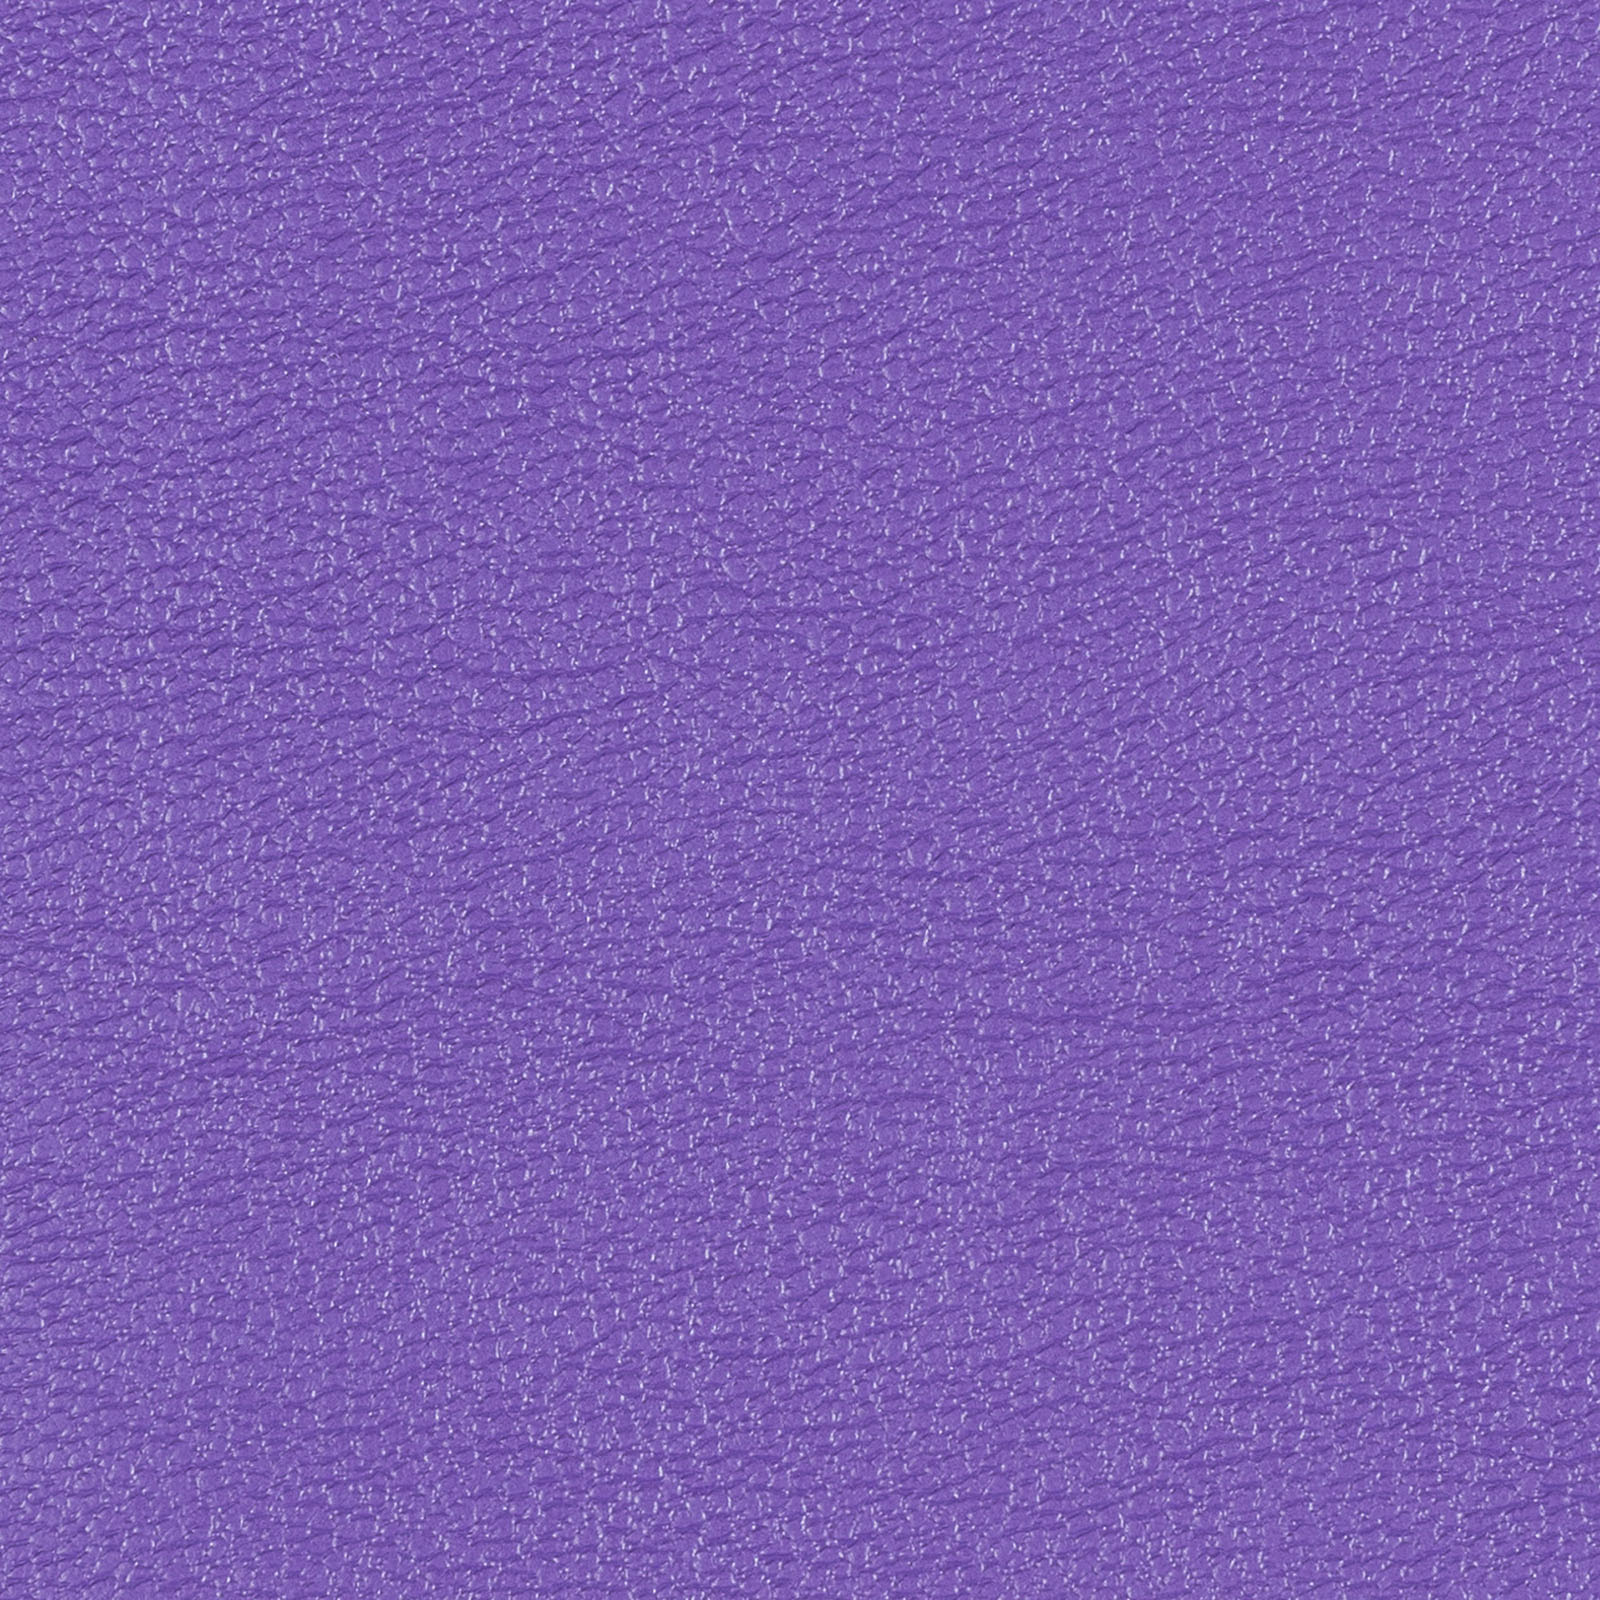 Buy bright-violet Allsport